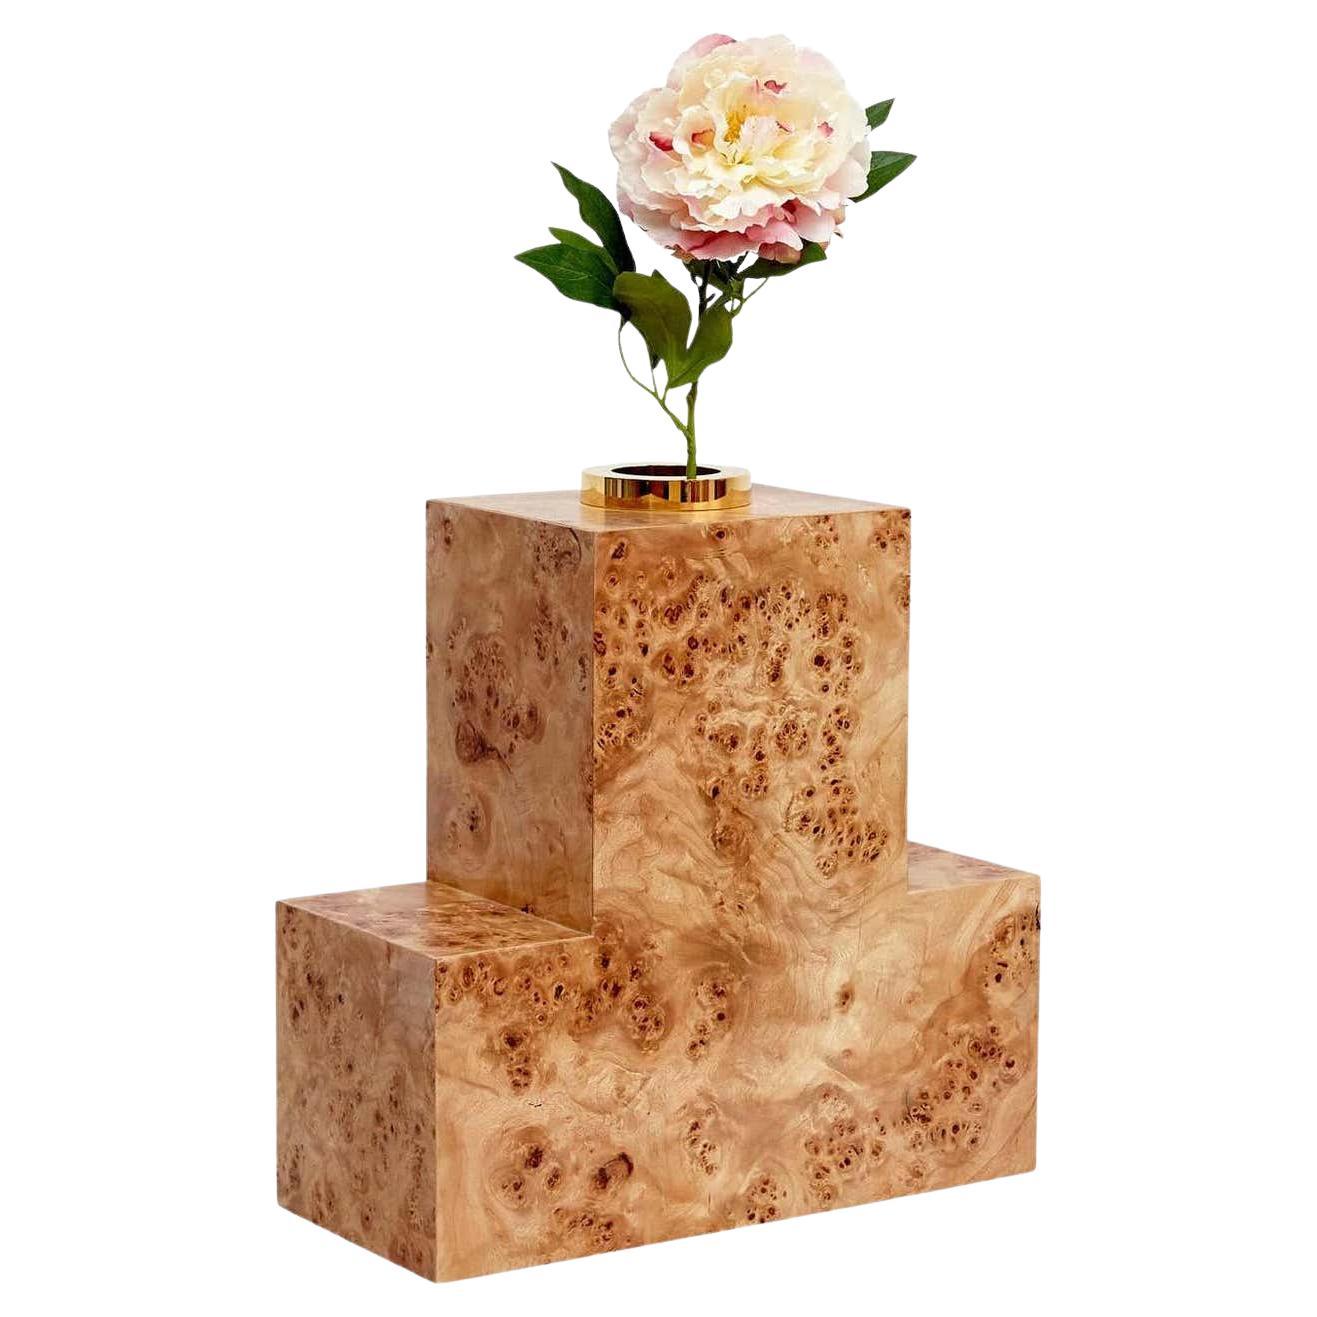 Twenty-Seven Woods pour un vase à fleurs artificielles chinois P d'Ettore Sottsass